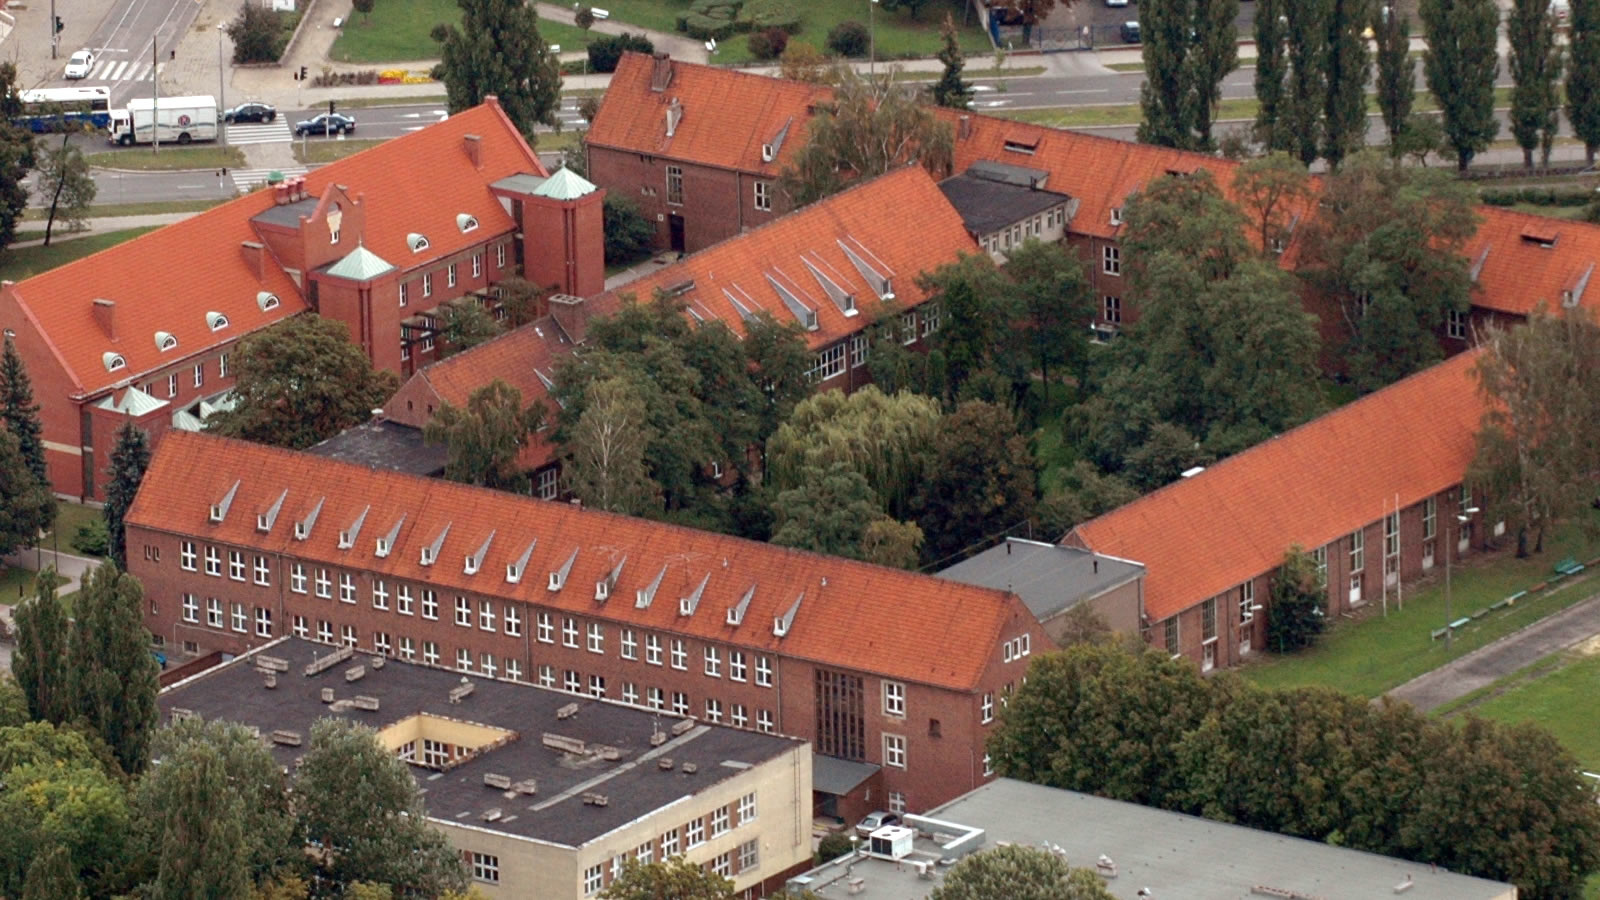 Kazimierz Wielki University in Bydgoszcz